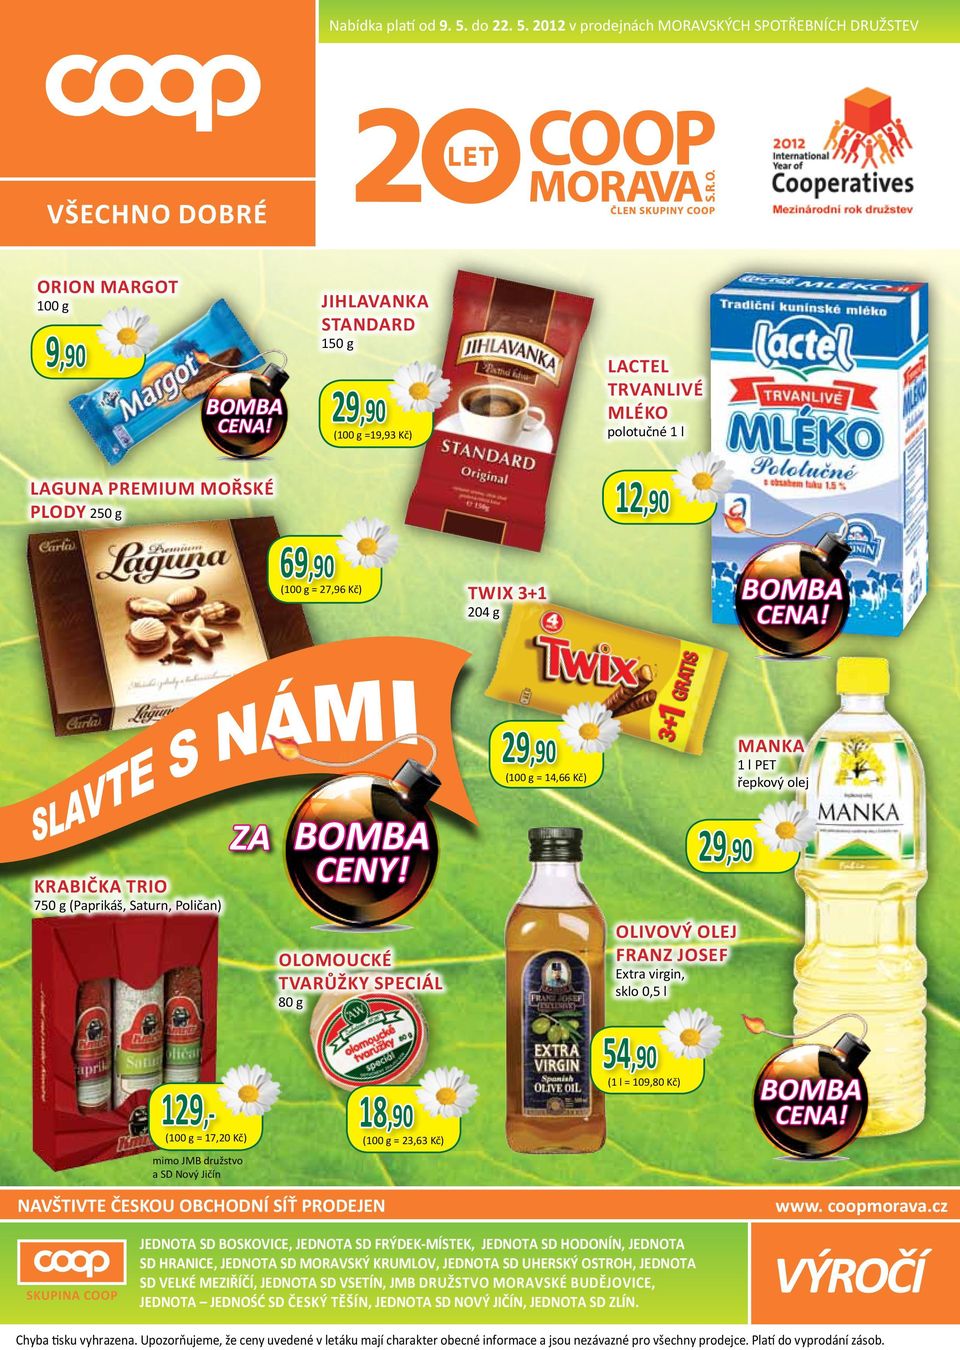 2012 v prodejnách moravských spotřebních družstev všechno dobré ORION MARGOT 100 g 9,90 Jihlavanka Standard 150 g (100 g =19,93 Kč) Lactel trvanlivé mléko polotučné 1 l Laguna PREMIUM Mořské plody